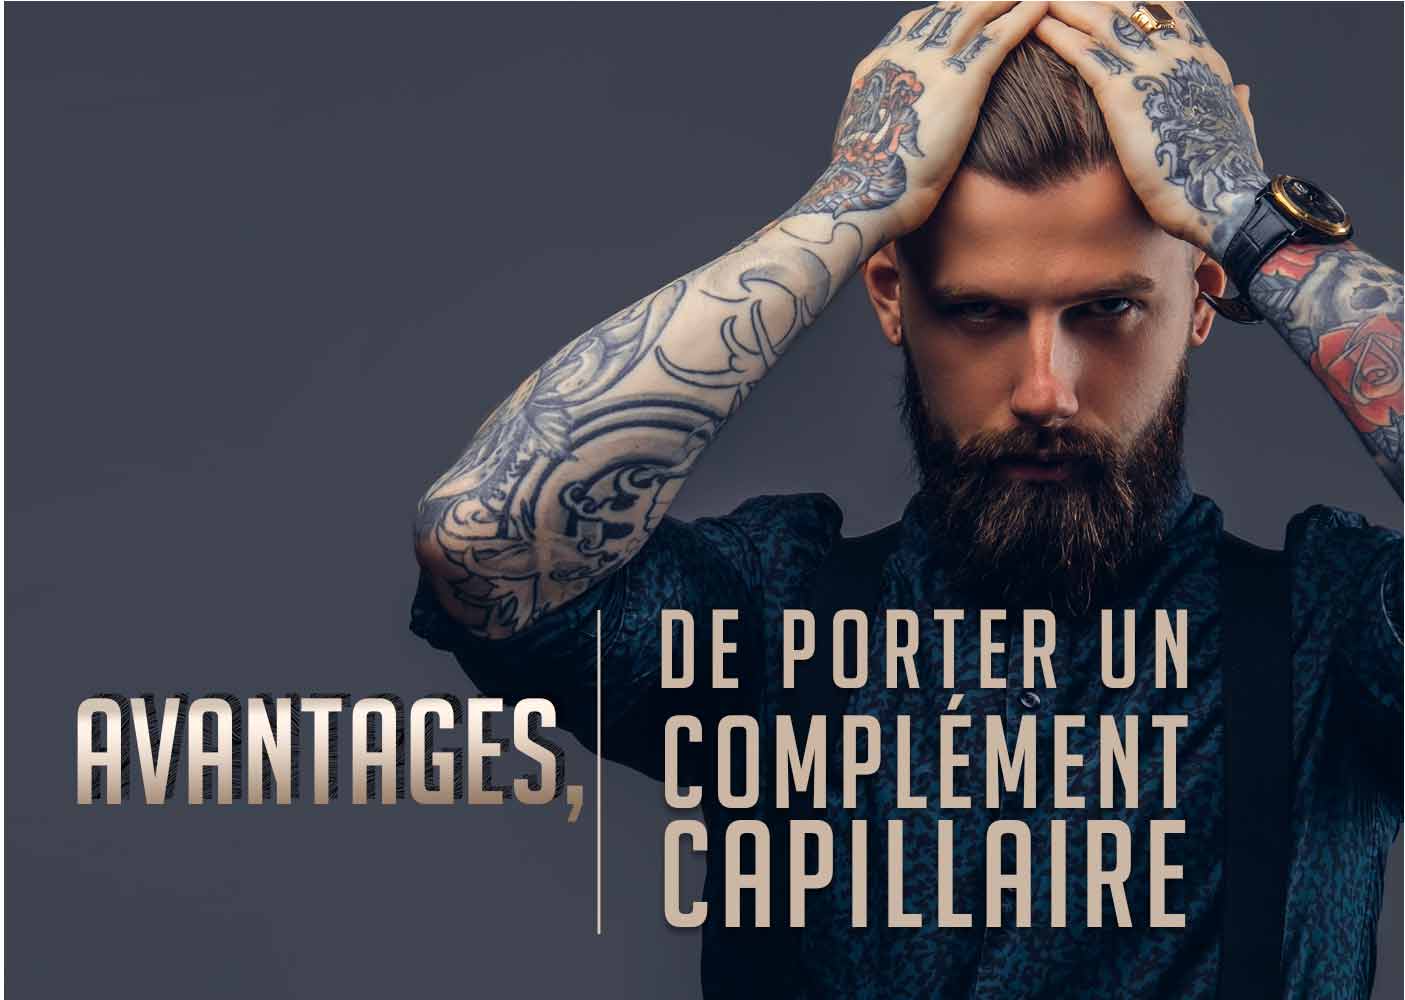 avantages_porter_complement_capillaire2